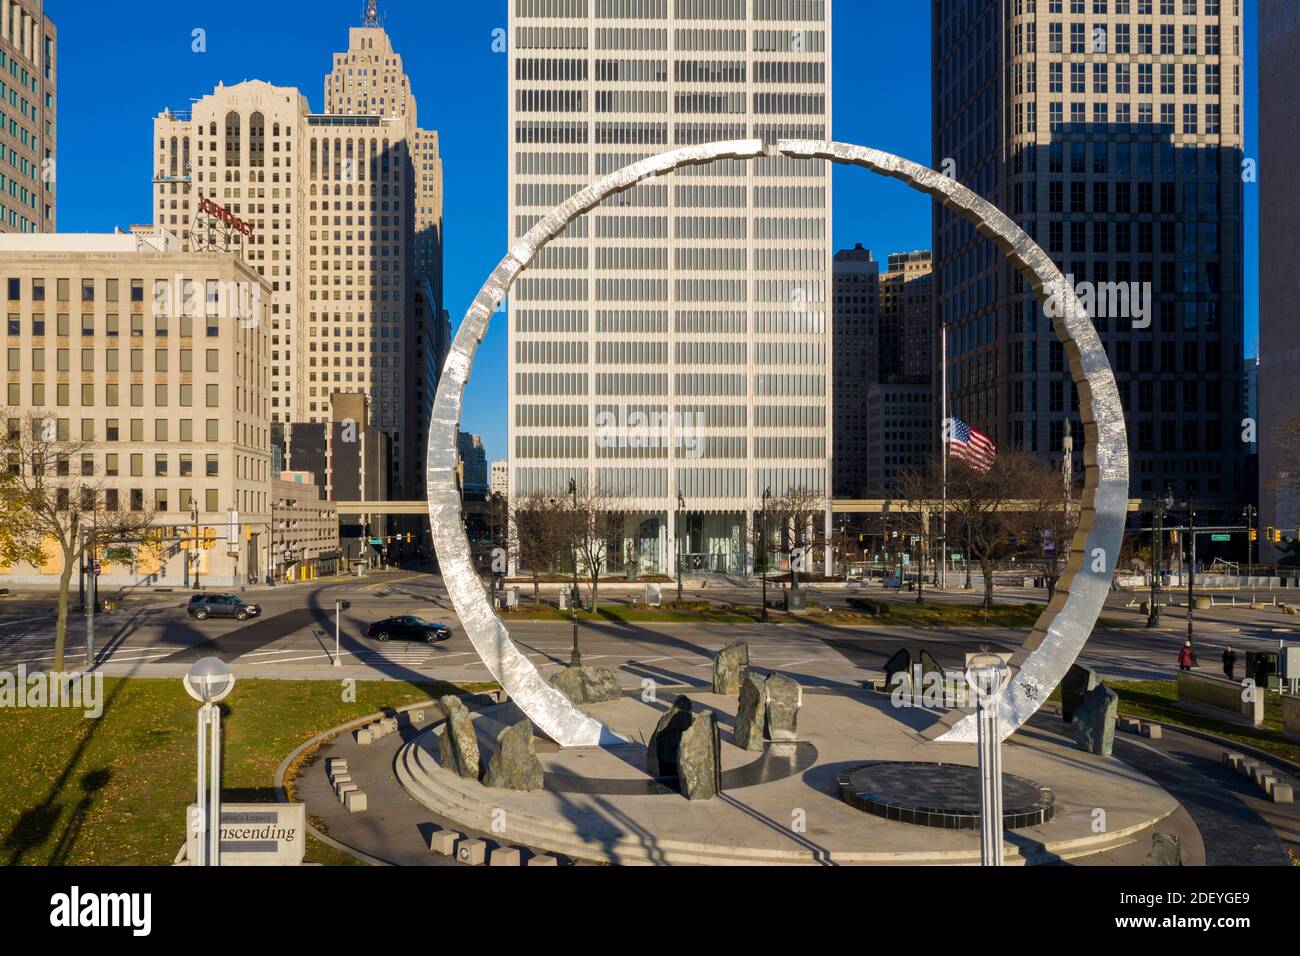 Detroit, Michigan - « transcendant », un monument historique du travail à Hart Plaza, érigé par la Michigan Labour History Society. Banque D'Images